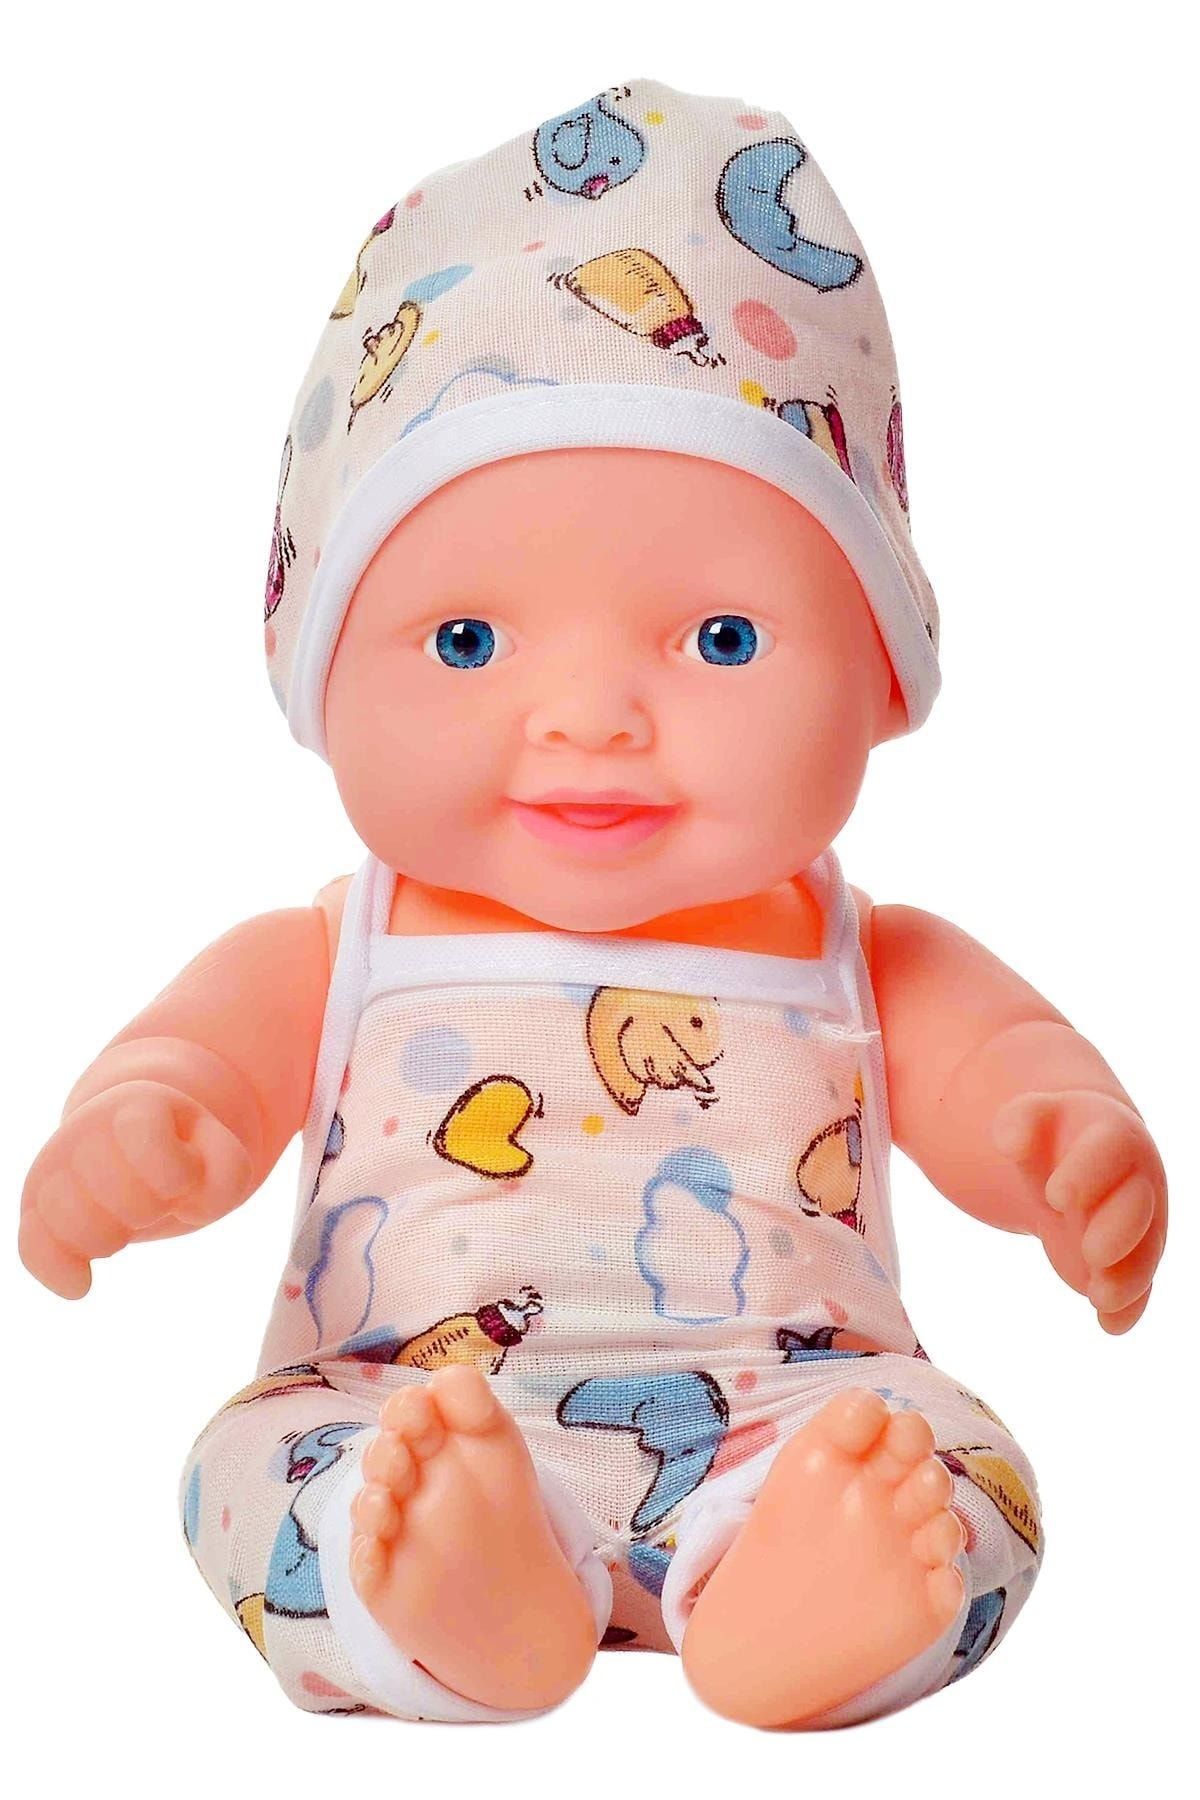 Global Toys Erkek Modelli Ingilizce Konuşan Ağlama Sesli Et Bebek